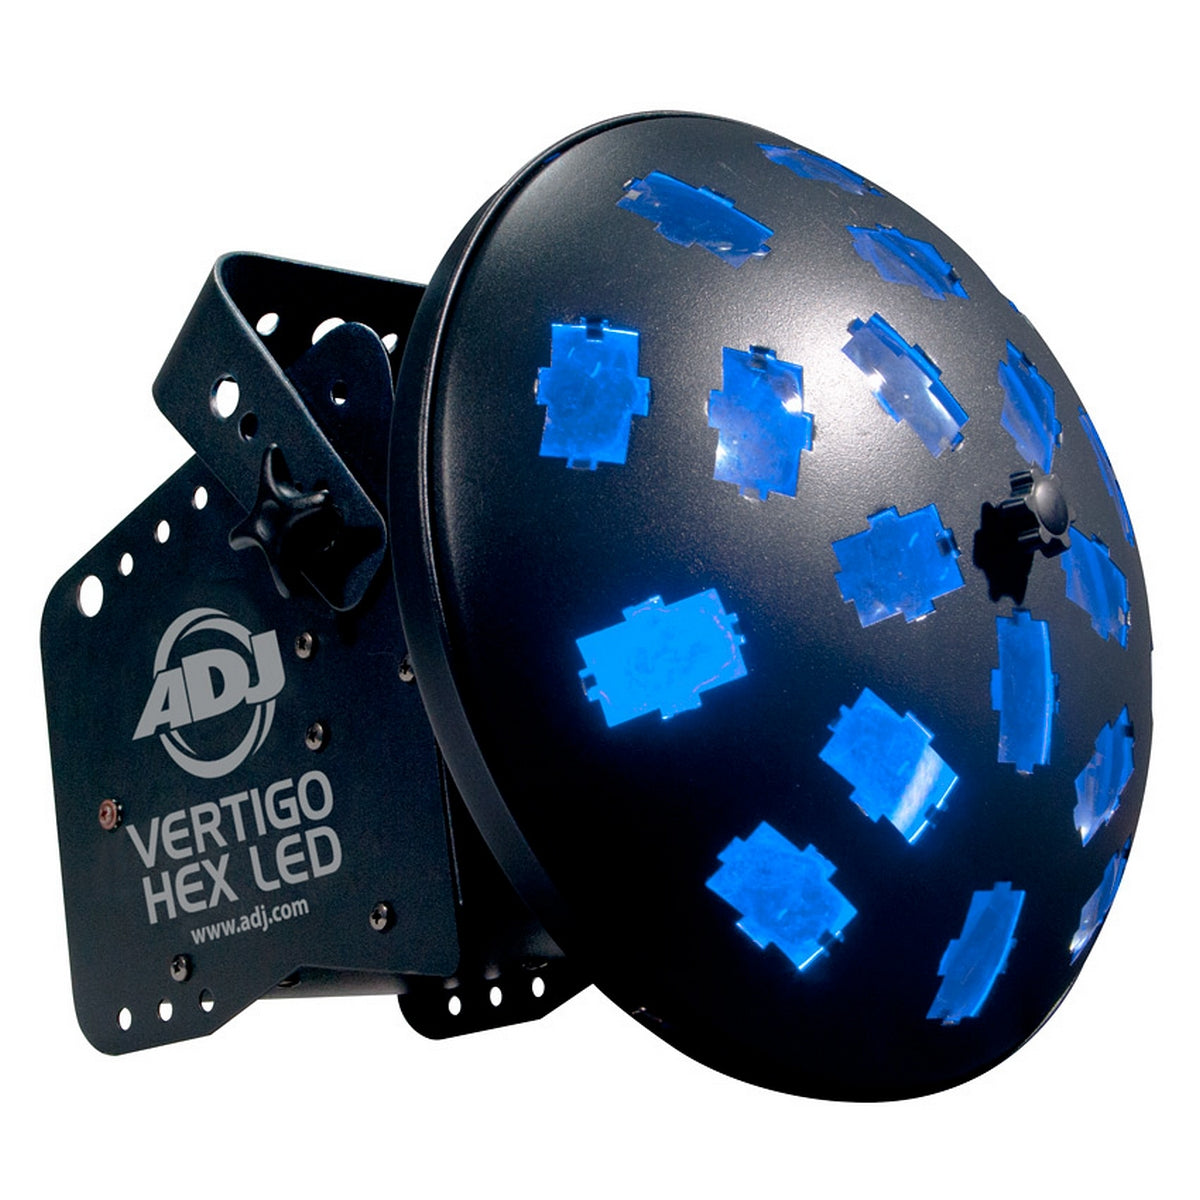 ADJ Vertigo Hex LED | (2x 12-Watt "6-in-1" HEX LED Technology)